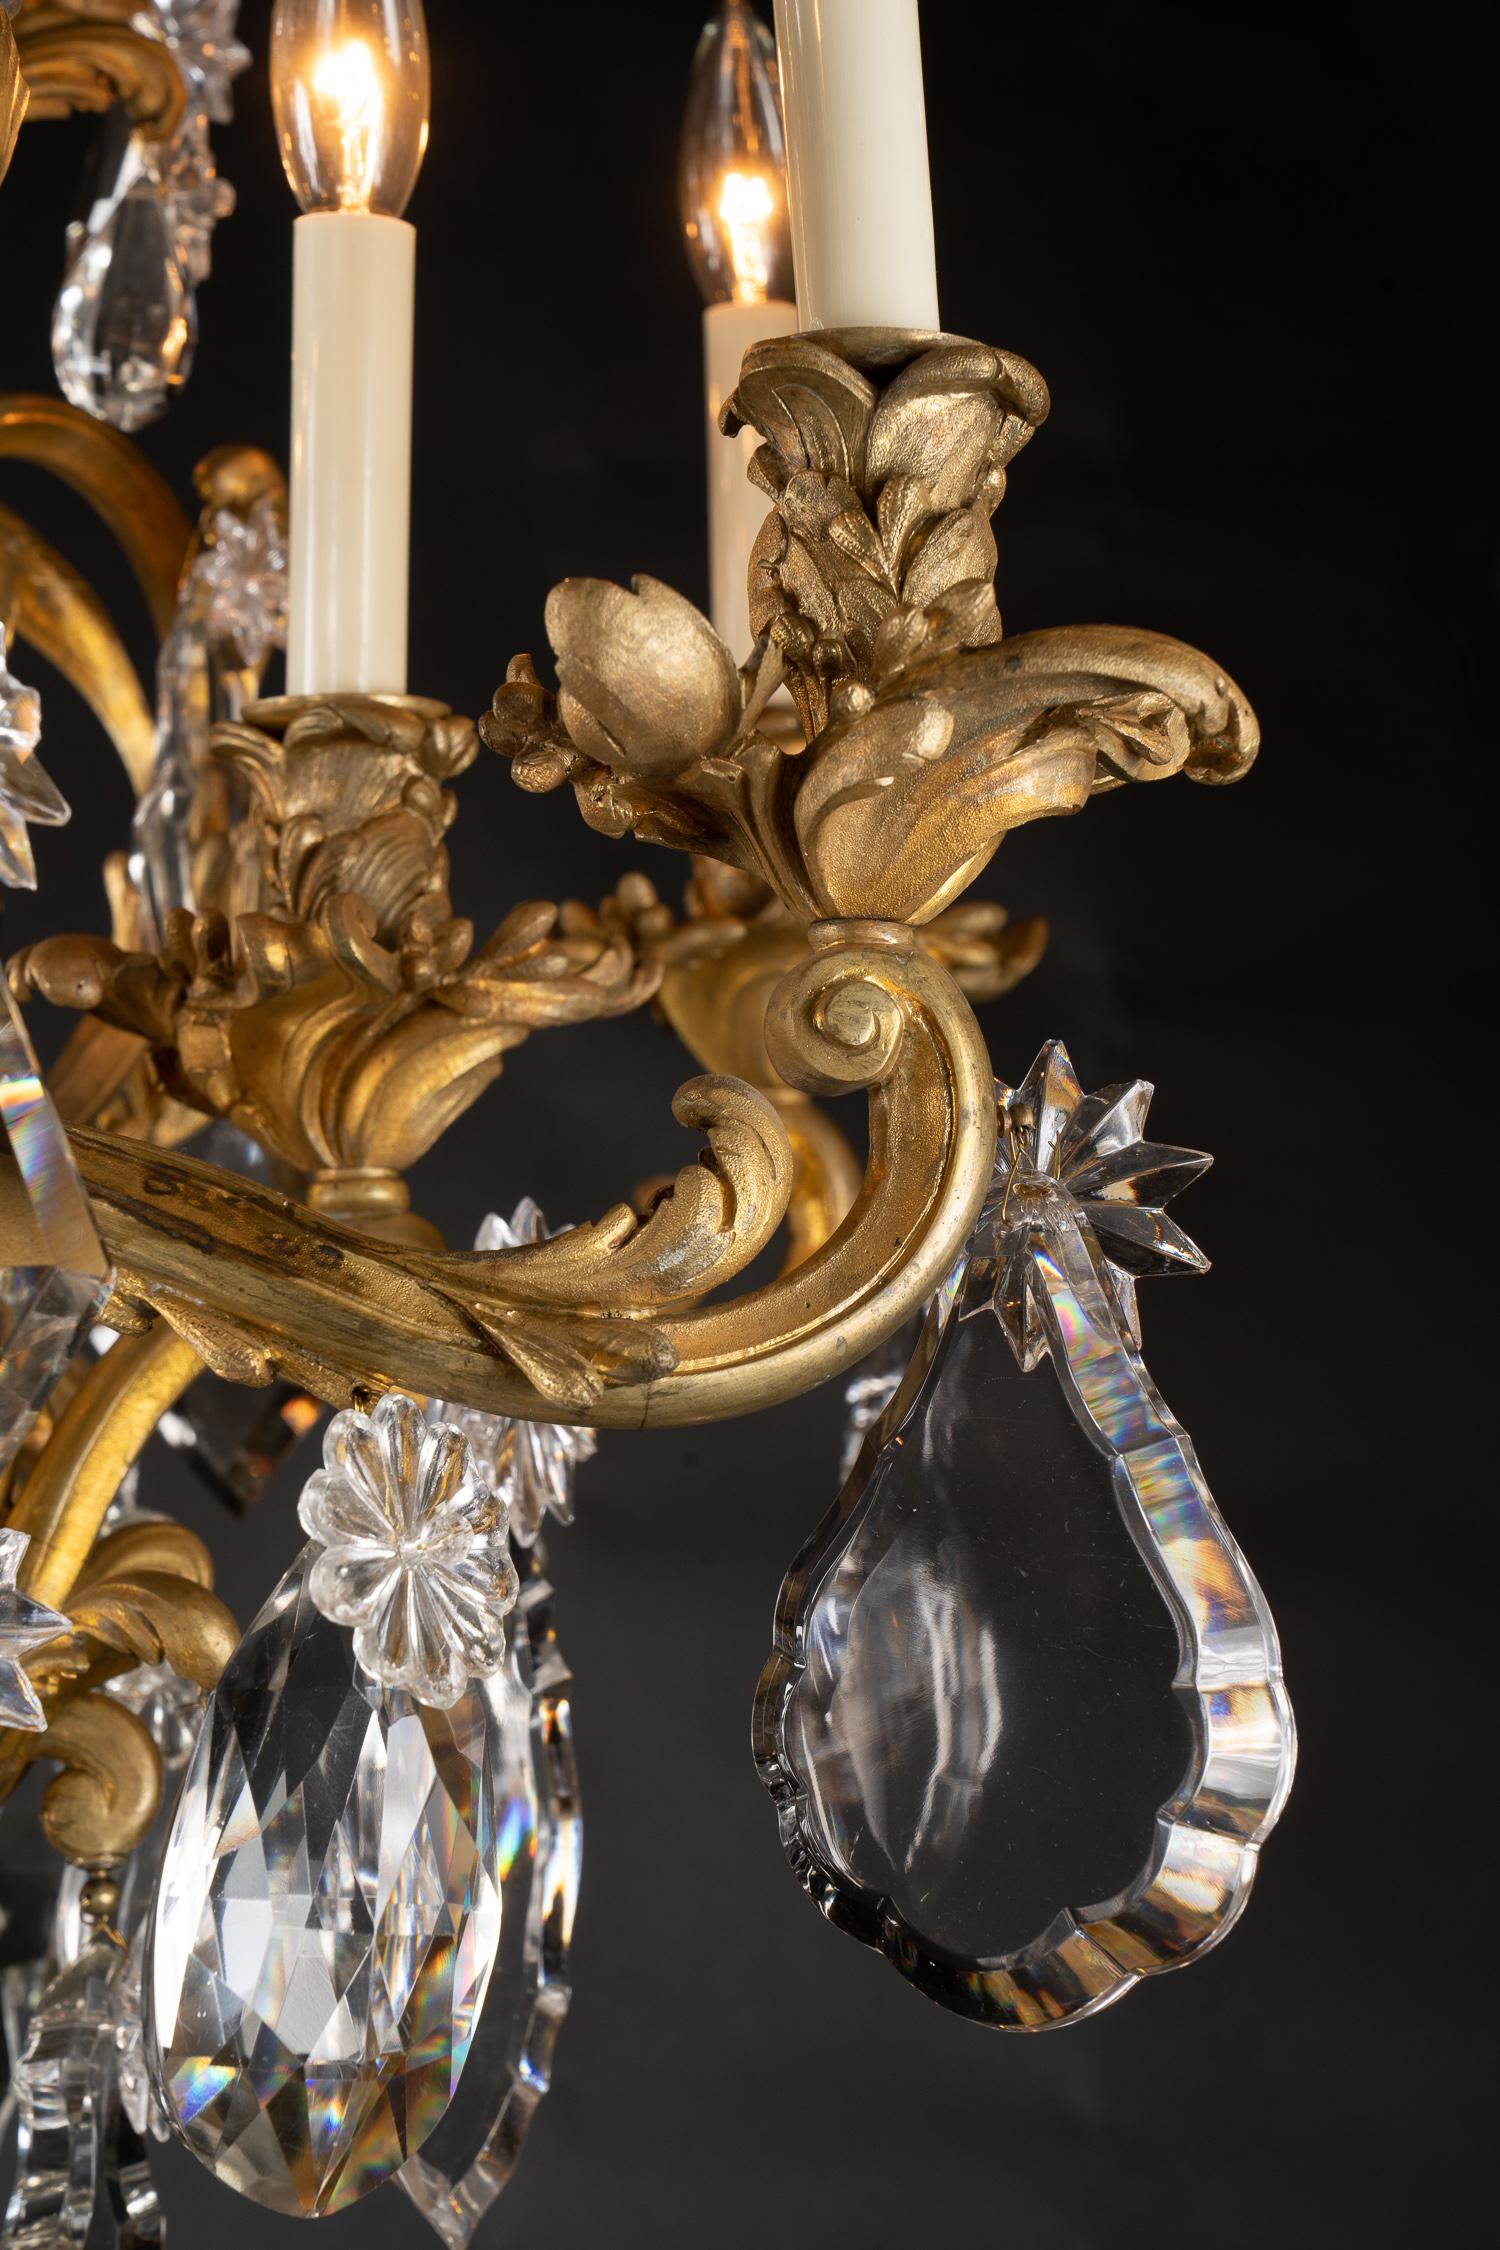 Ce magnifique lustre rococo Louis XV aux moulages finement ciselés présente des chandeliers et des bougies en bronze d'orge avec un centre en cristal massif. Cette pièce antique française datant du 19e siècle possède une présence tout simplement